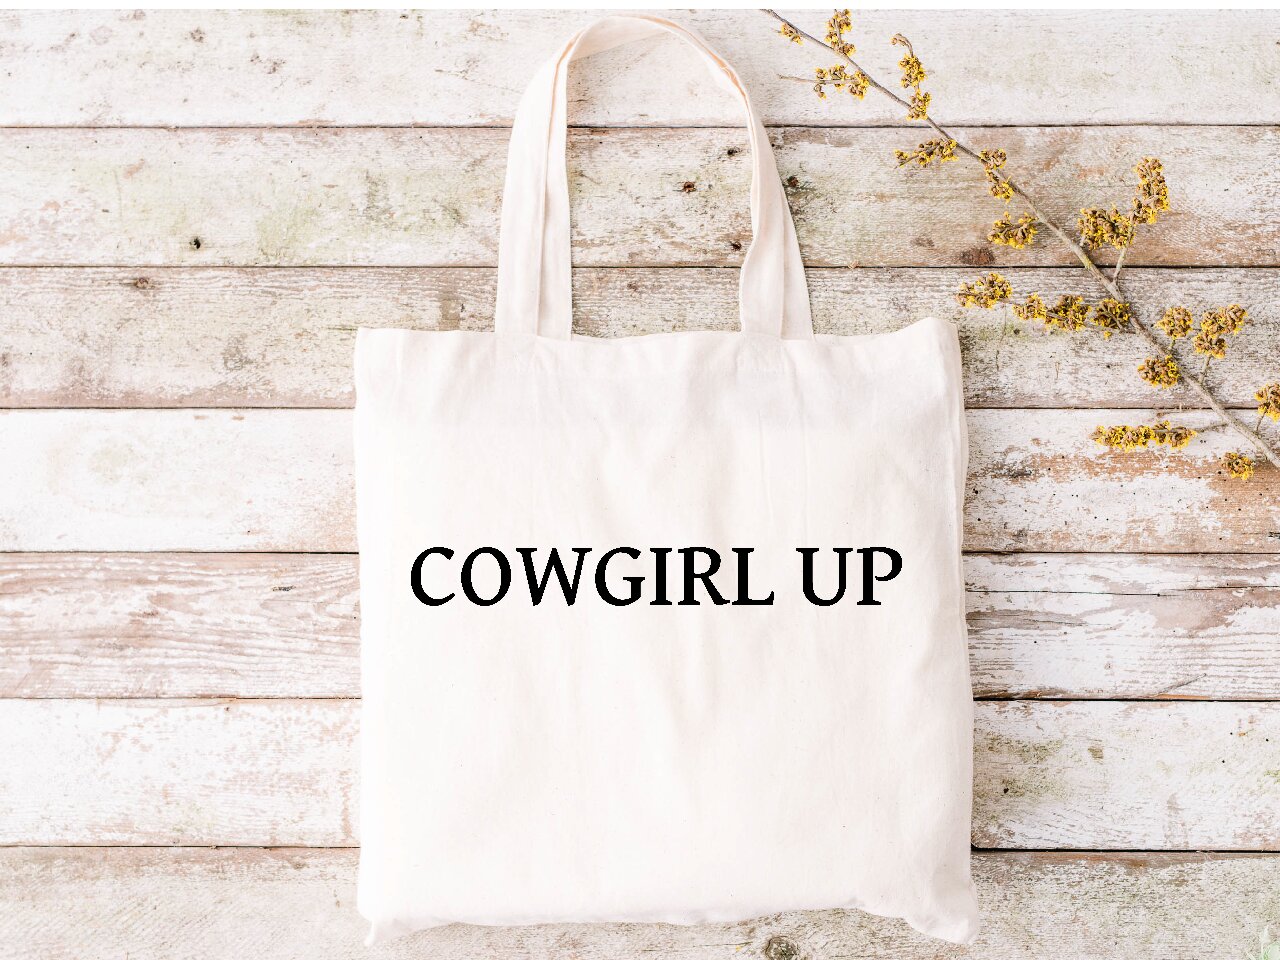 Western Cowgirl Fringe Handbag Conceal Carry Purse Women Shoulder Bag  Wallet Red | eBay